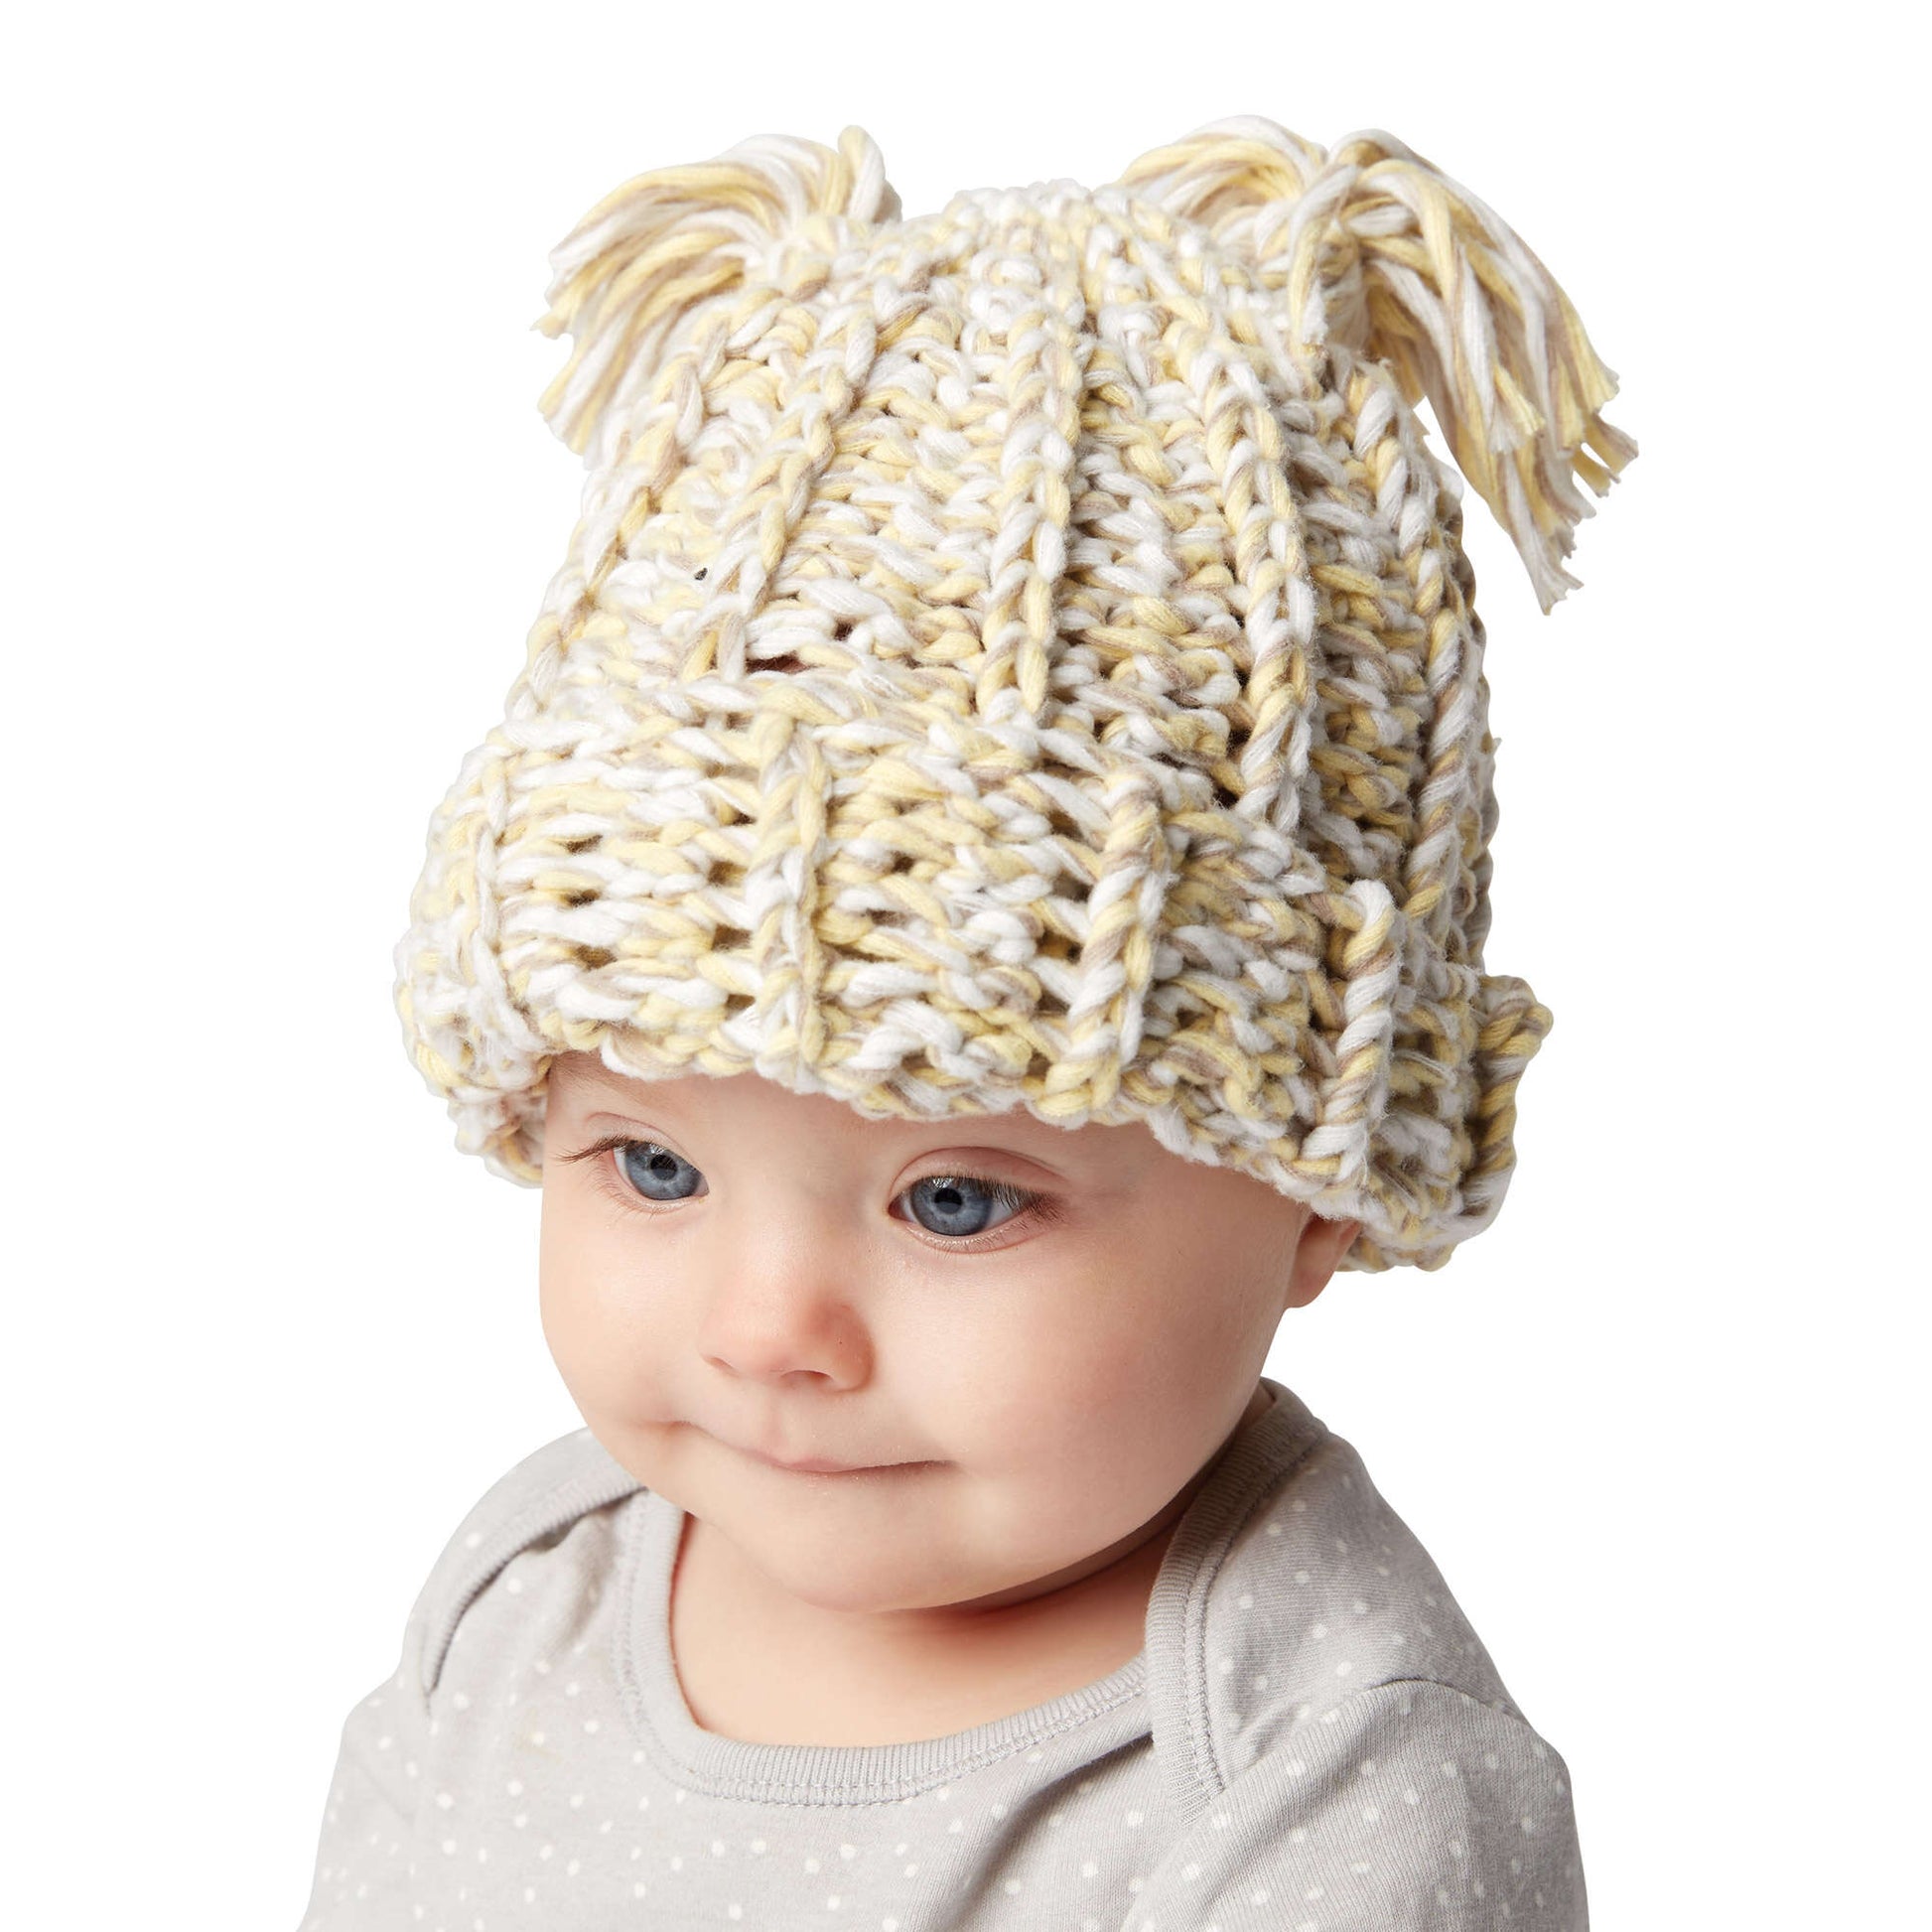 Free Bernat Tasseled Crochet Baby Hat Pattern